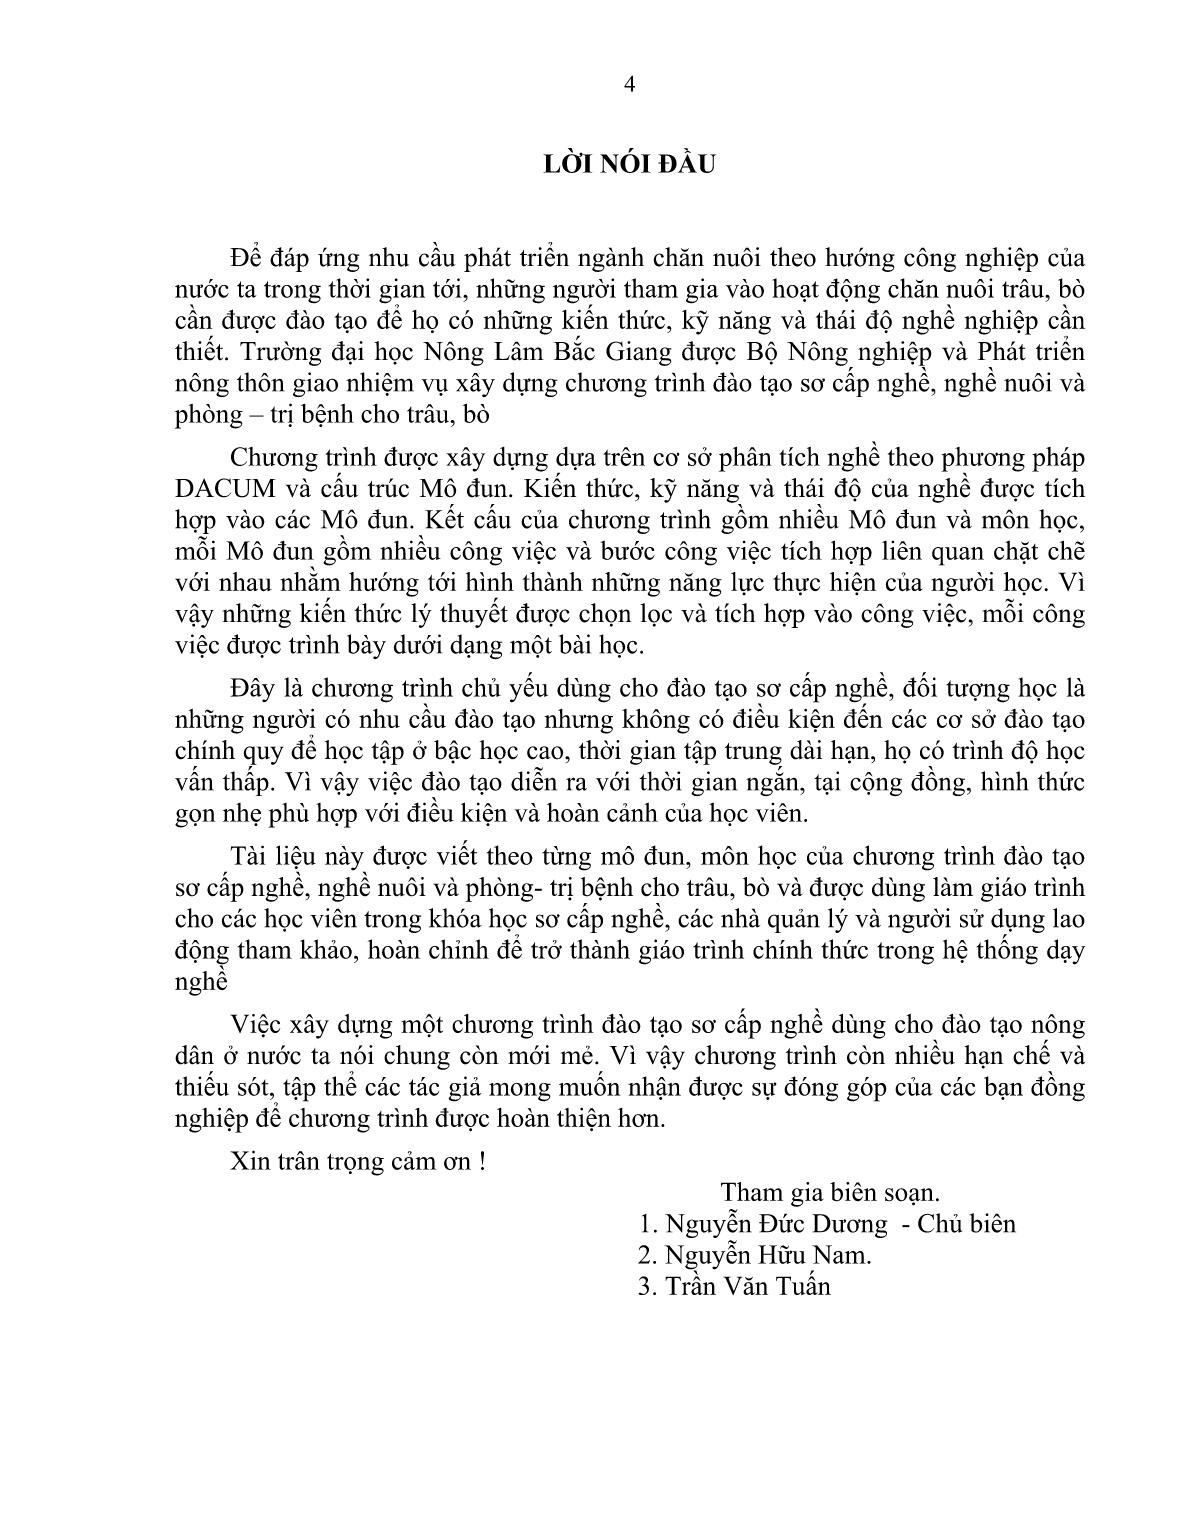 Giáo trình mô đun Nuôi trâu, bò đực giống (Trình độ: Sơ cấp nghề) trang 5